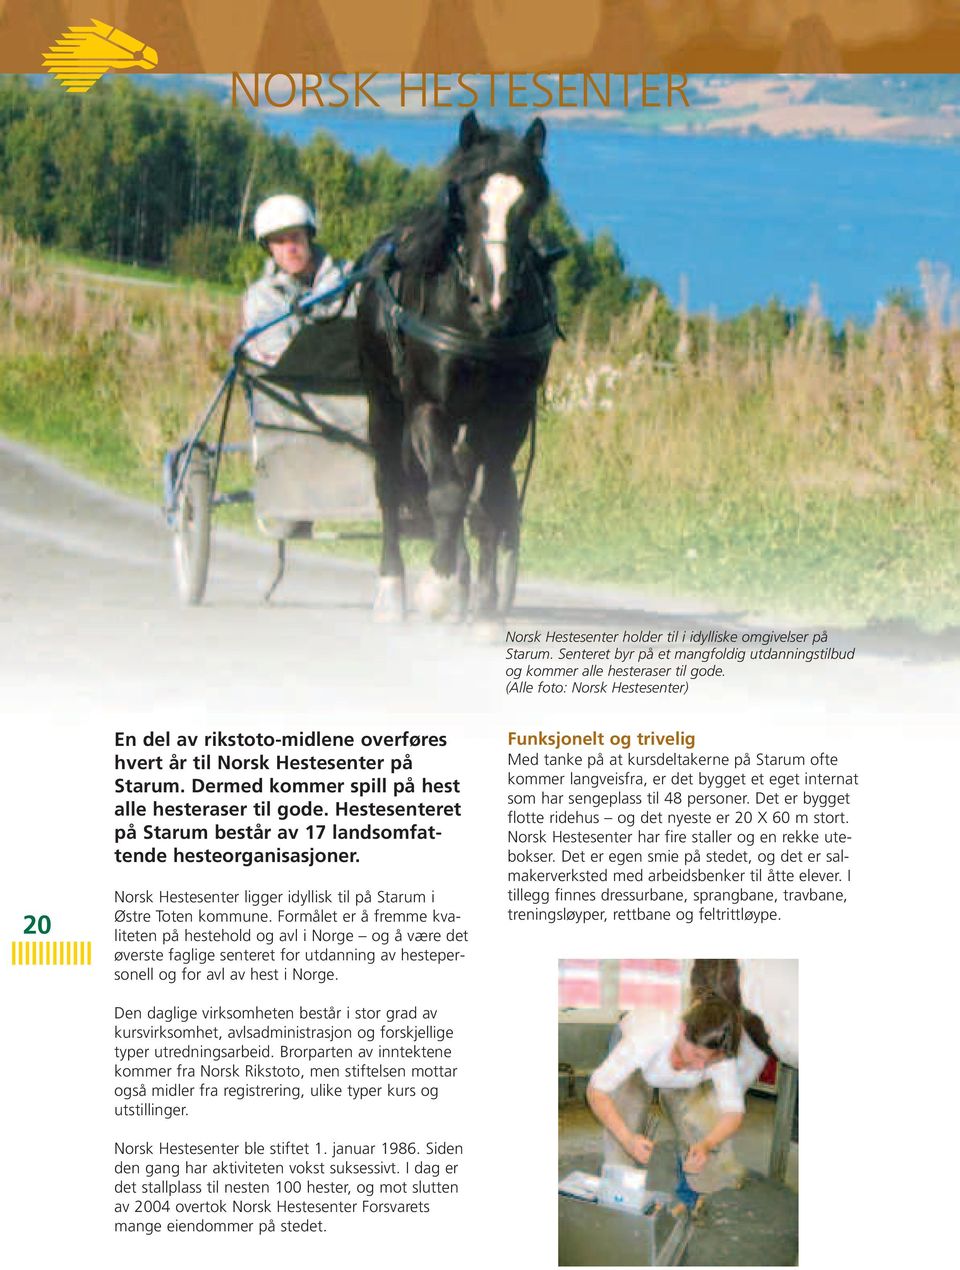 Hestesenteret på Starum består av 17 landsomfattende hesteorganisasjoner. Norsk Hestesenter ligger idyllisk til på Starum i Østre Toten kommune.